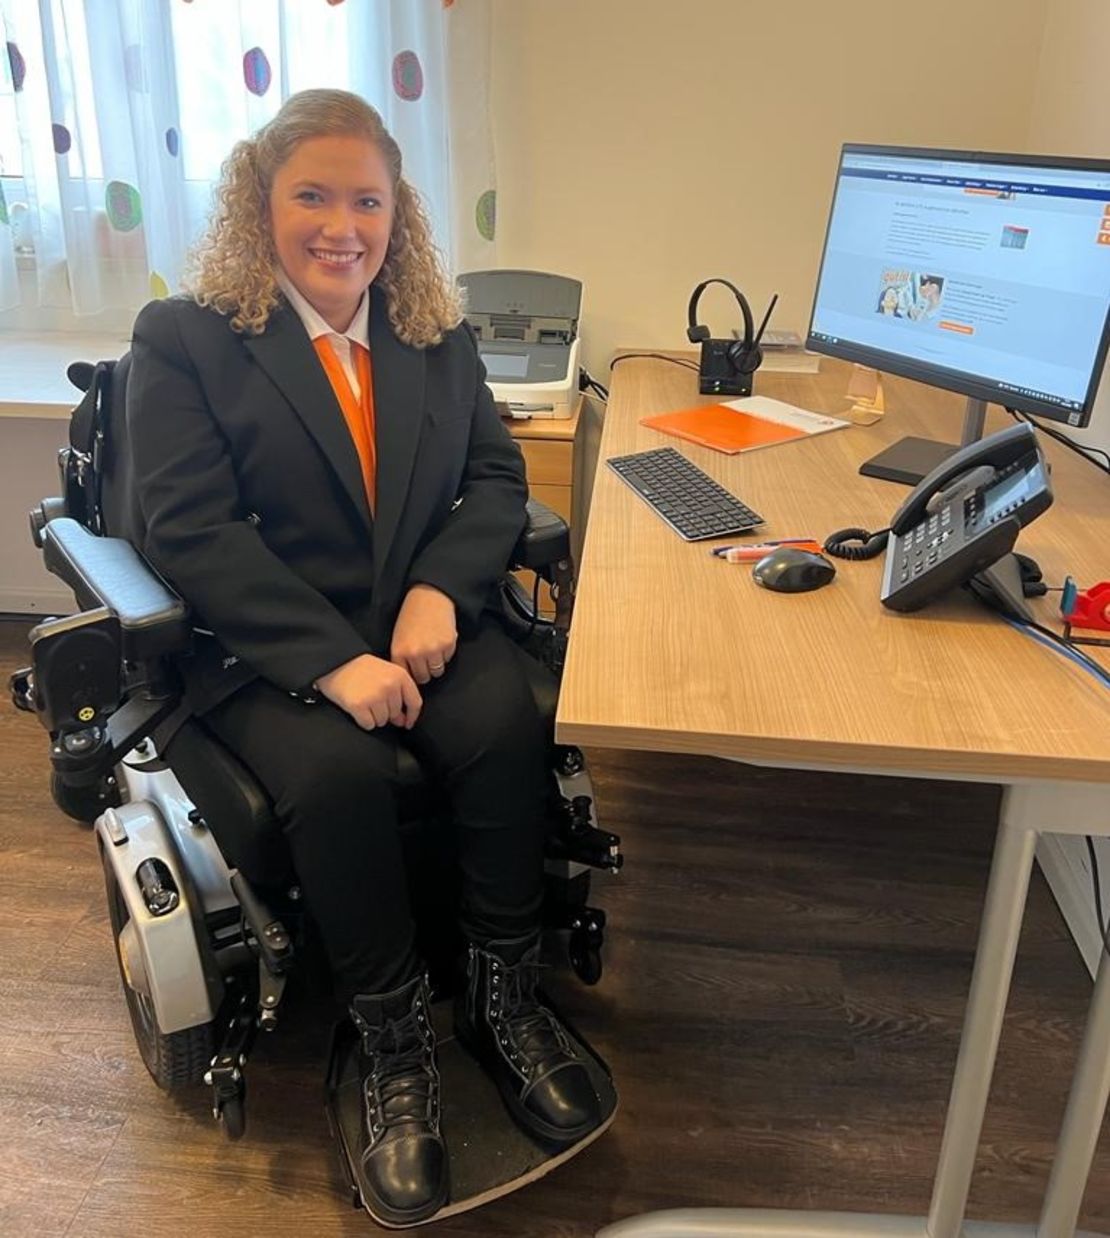 Juliana F, Absolventin in unserem BBW möchte anderen Rollstuhlfahrenden Mut machen